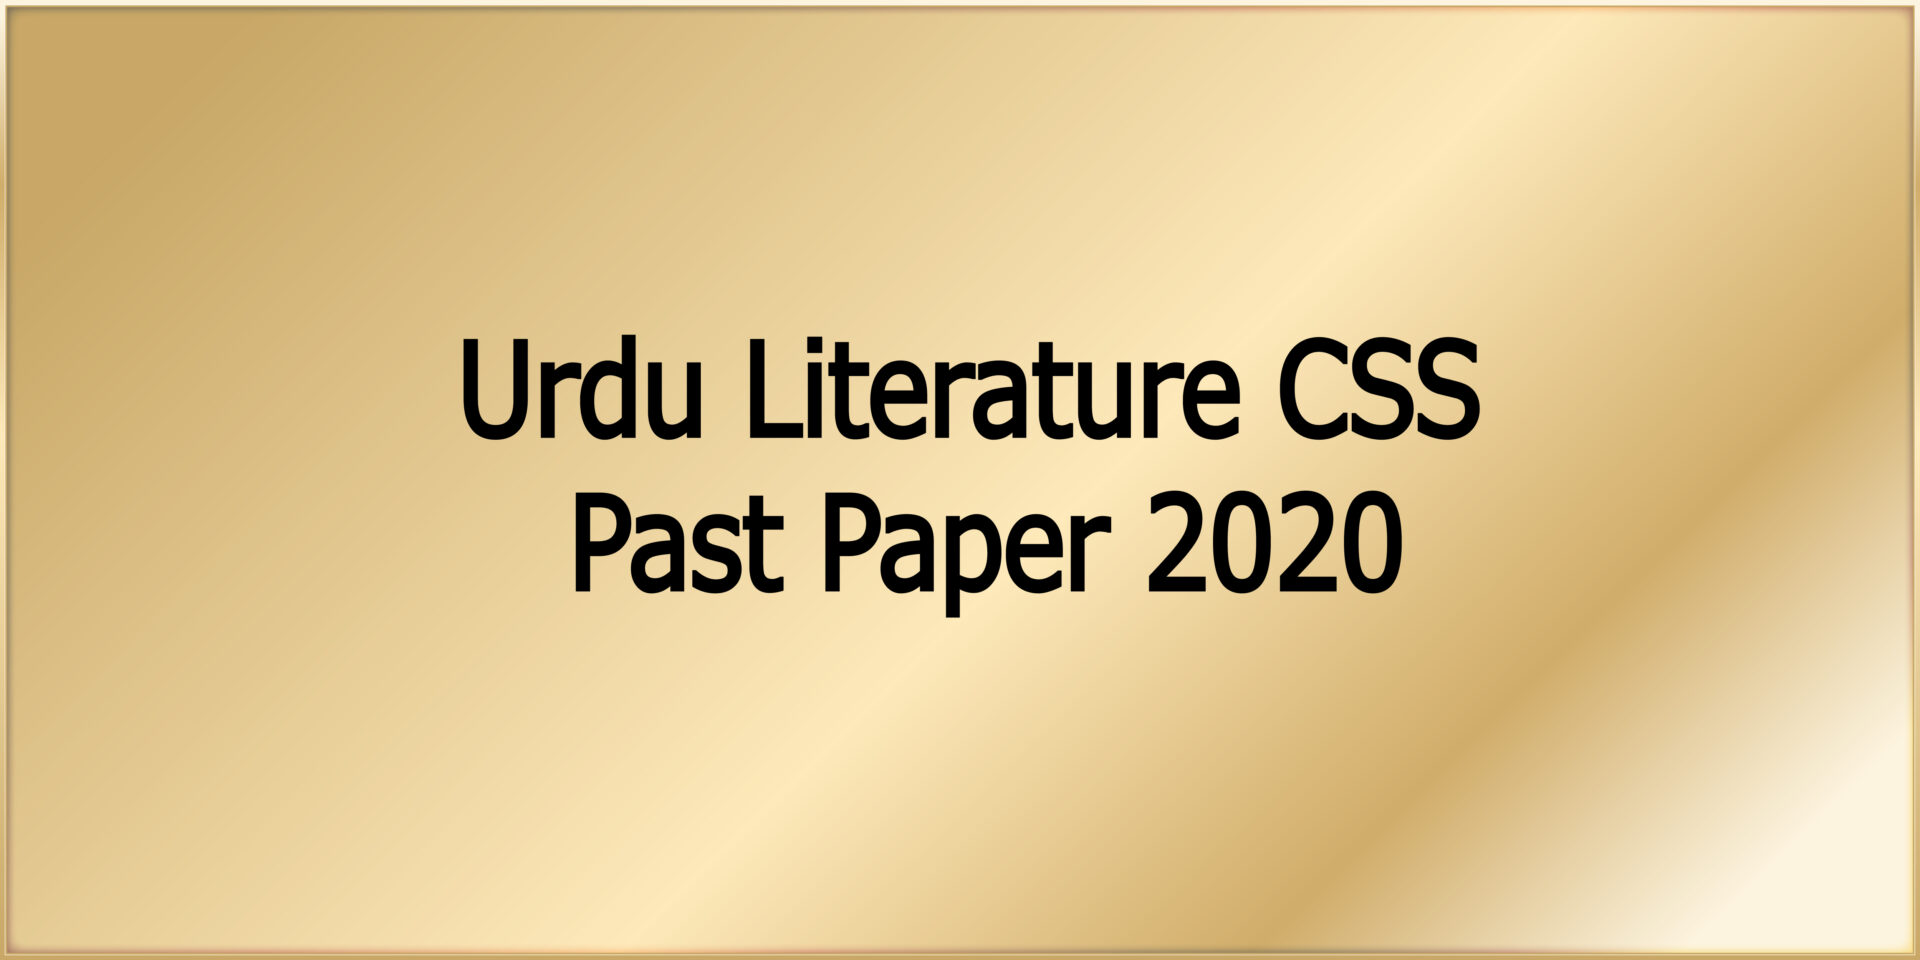 Urdu Literature CSS Past Paper 2020